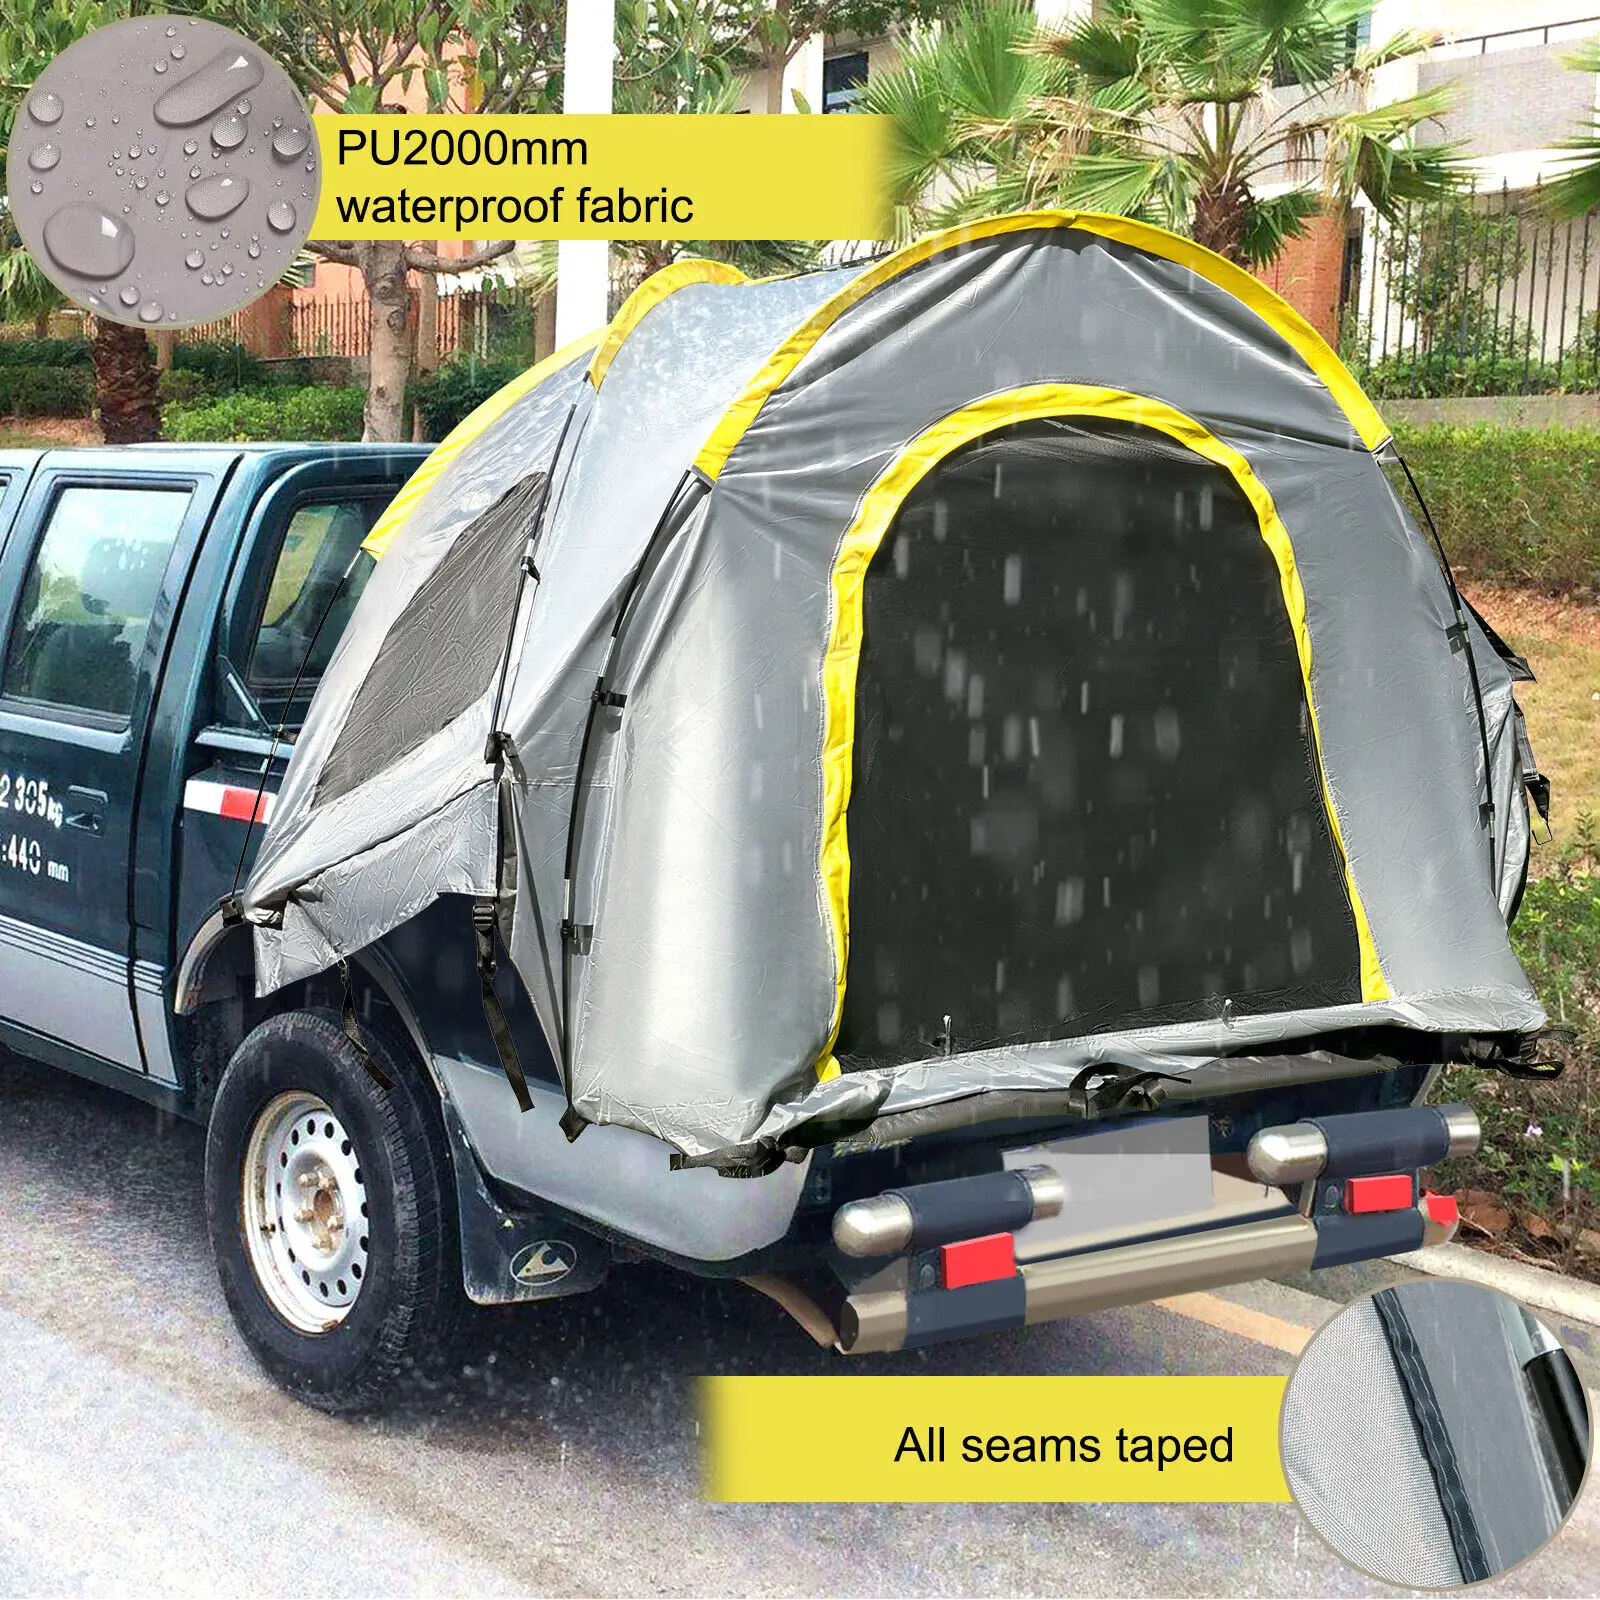 구매 VEVOR-5-8 FT 방수 트럭 텐트 자동차 액세서리 침대, 캠핑 하이킹을 위한 풀/미드 사이즈 트럭 2 인용 수면 용량